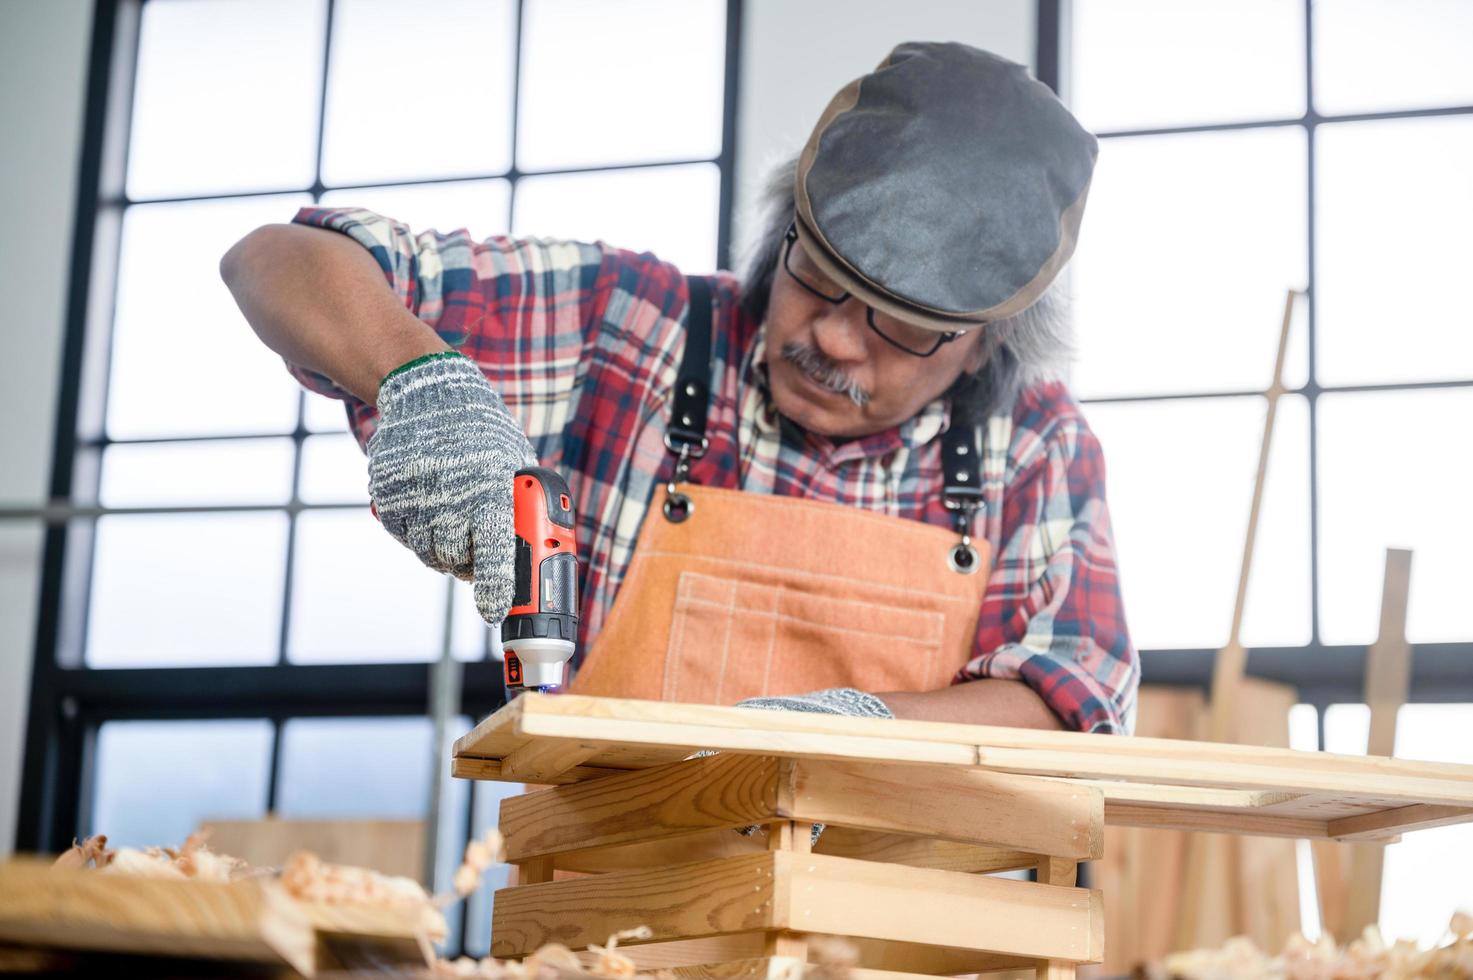 Carpintero profesional hombre que trabaja con la herramienta de la industria de la carpintería, taller de persona artesano con madera y equipos de construcción de carpintería foto